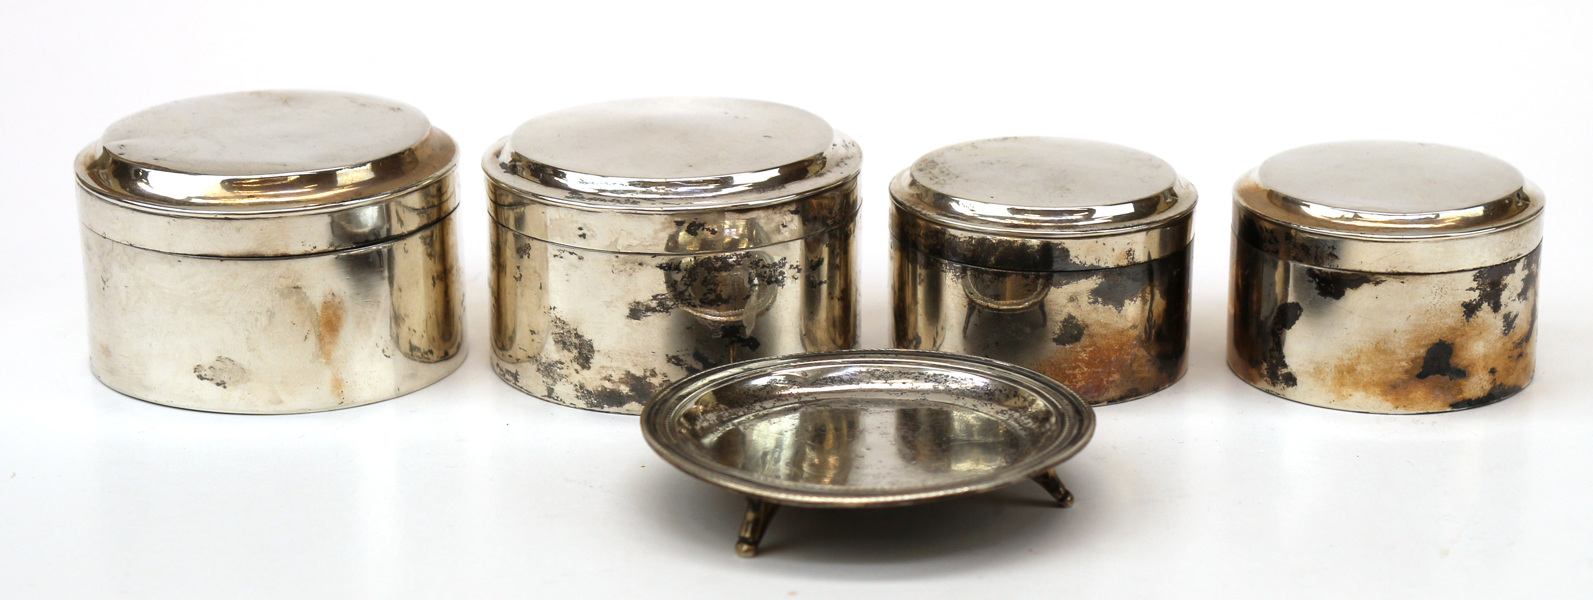 Toilettedosor 2 par samt nipperfat, silver, empire, 1800-talets 1 hälft, slät modell,_9149a_lg.jpeg